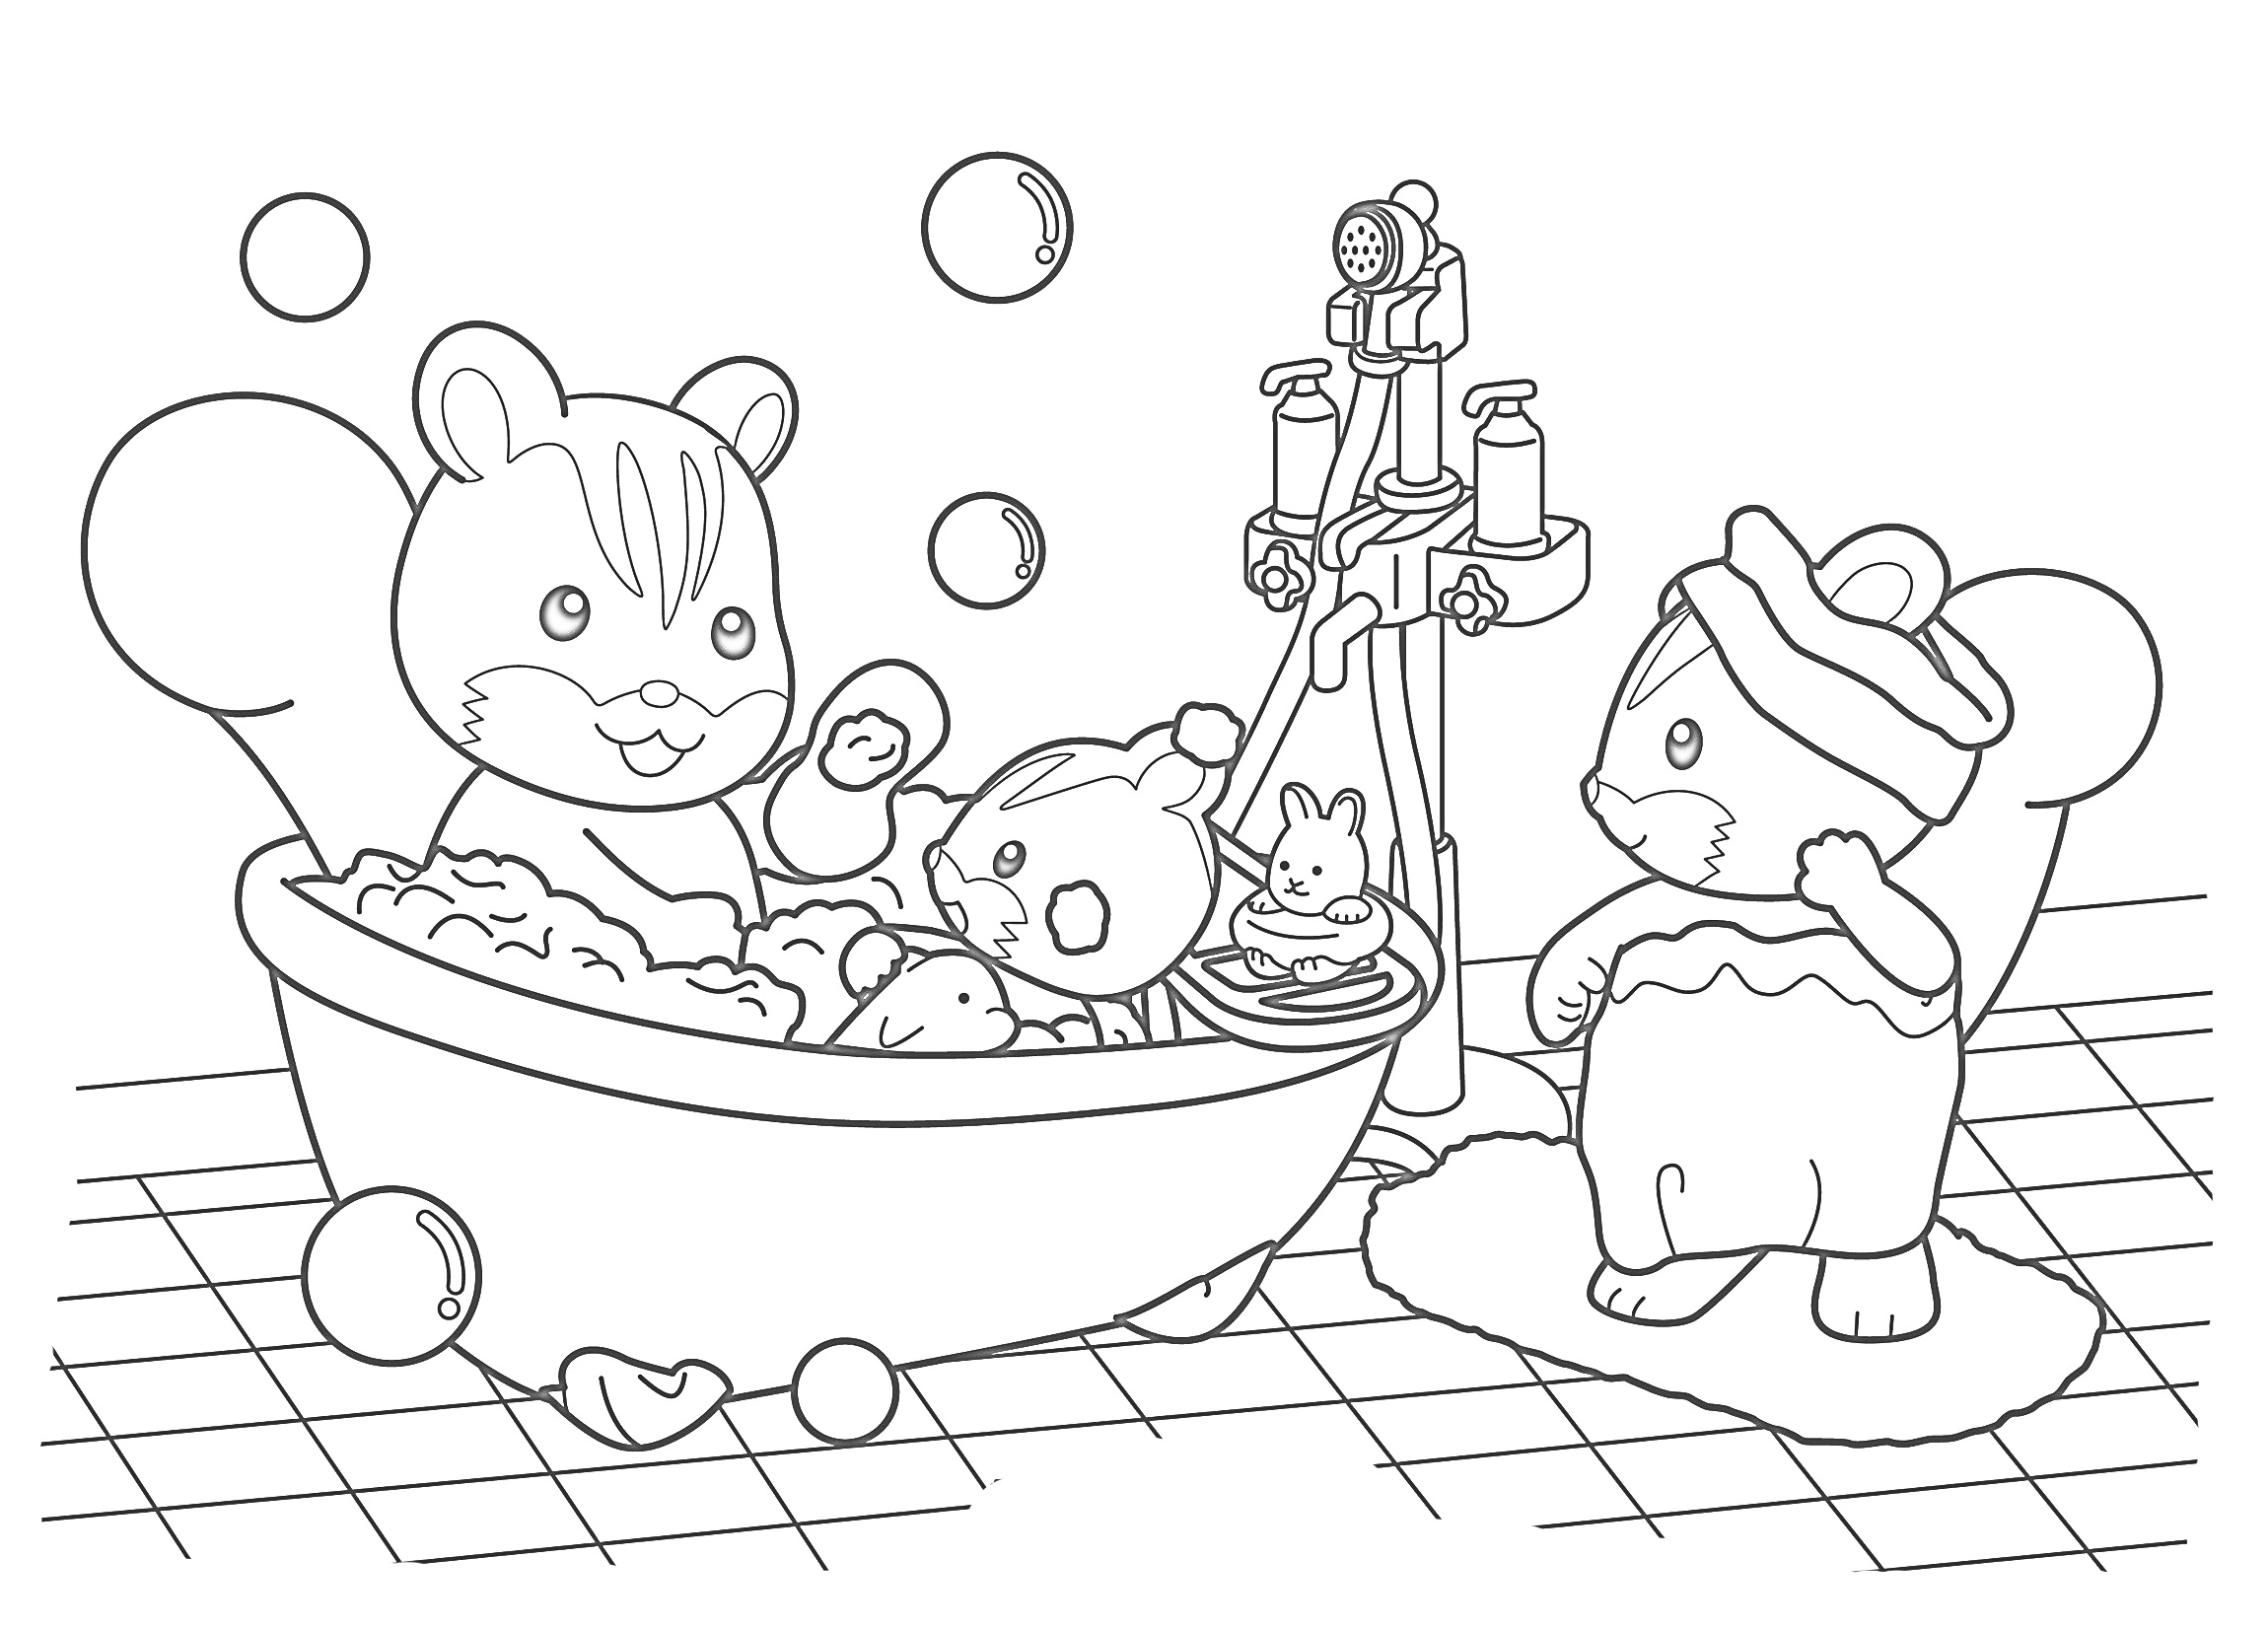 Раскраска Ванная комната с семейством из Сильвана Фэмили. Взрослый медведь купает двух маленьких медвежат, один из которых находится в ванне с игрушками, а второй стоит рядом на коврике. Ванна заполнена пеной, вокруг летят мыльные пузыри.